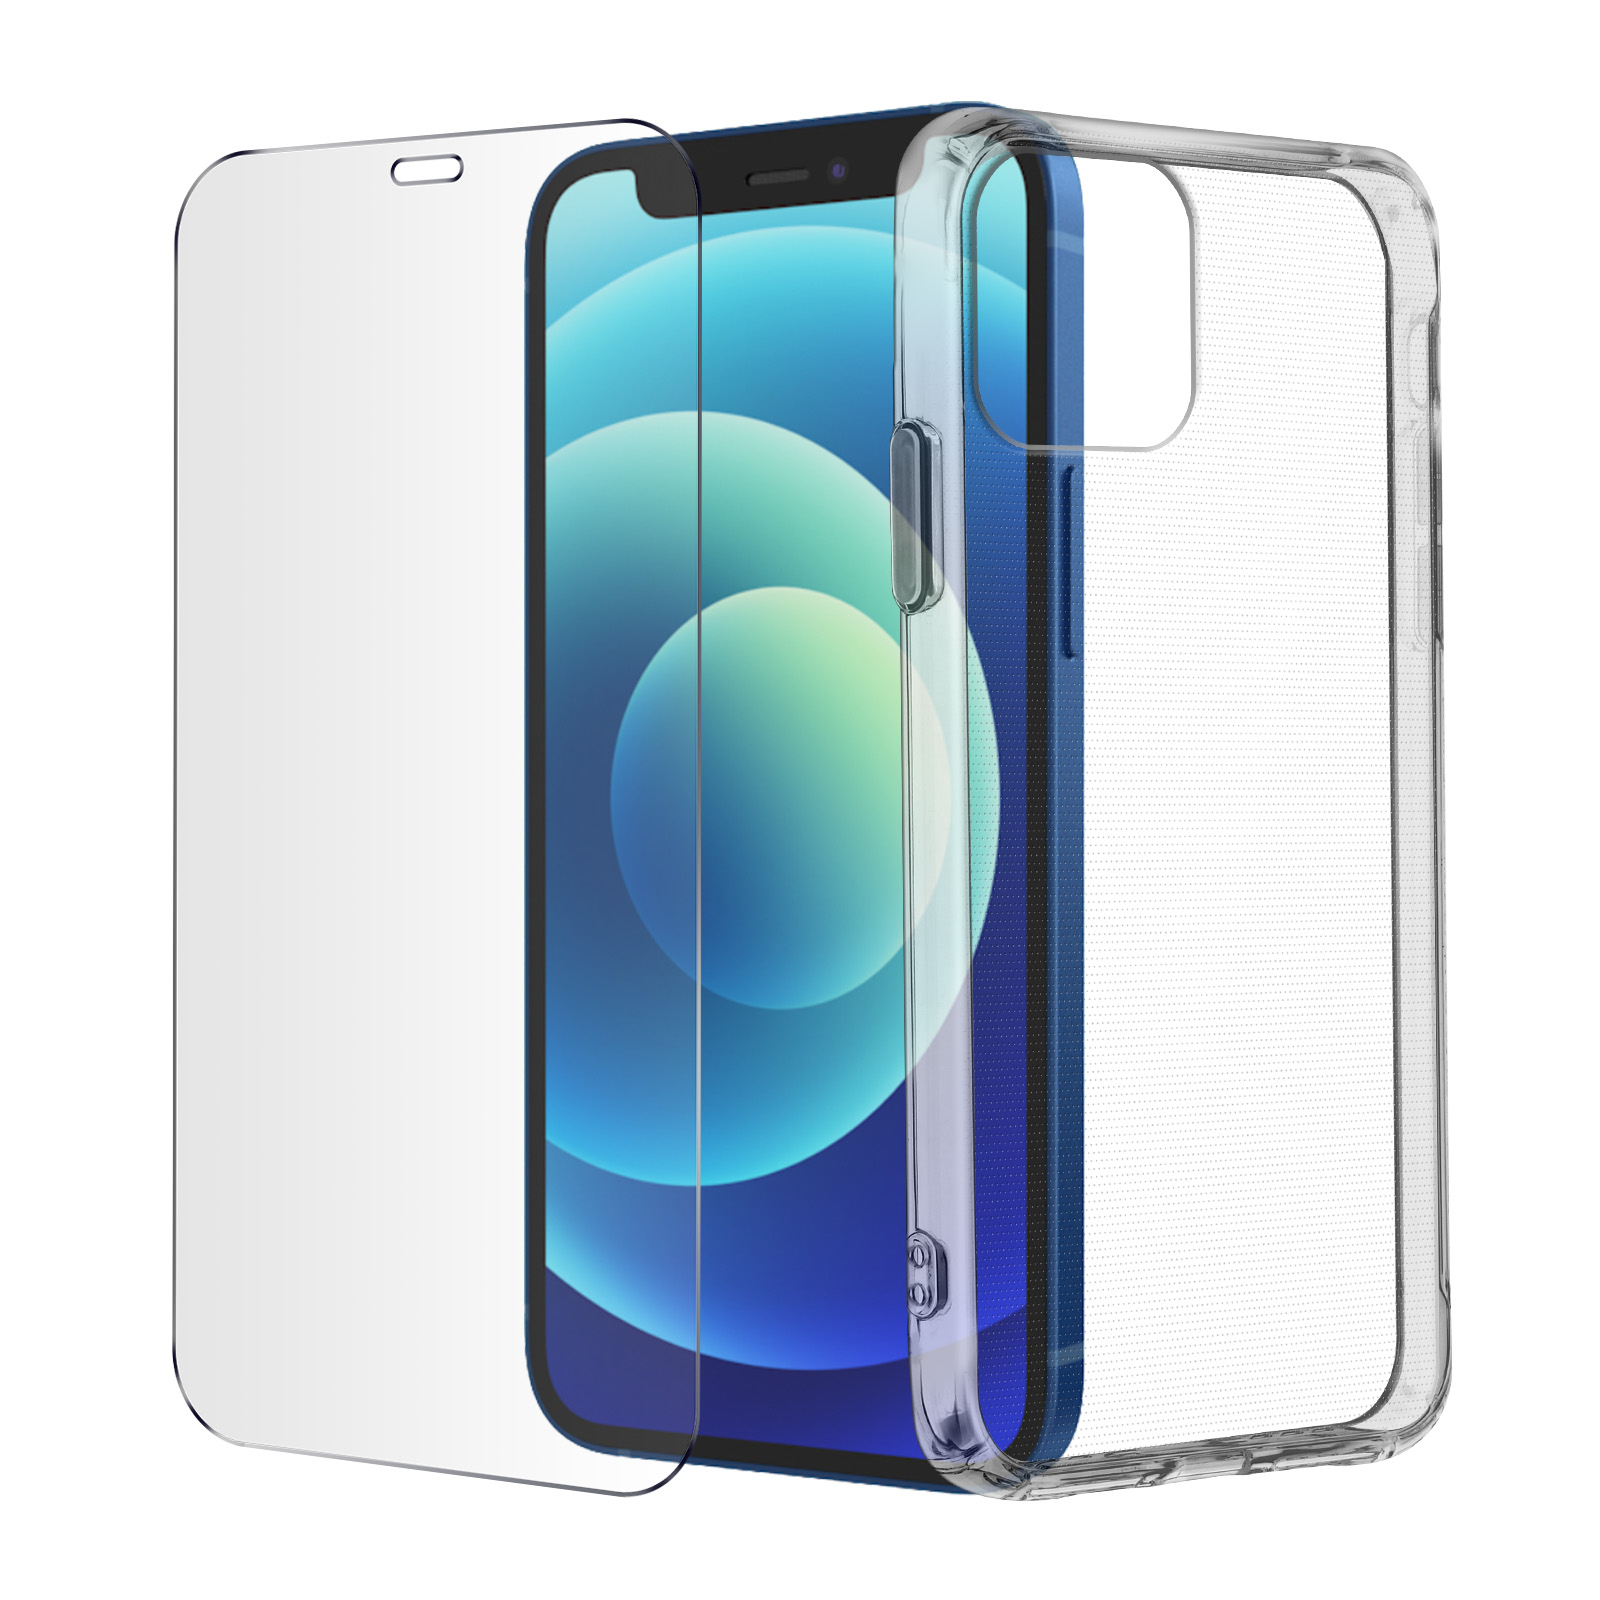 Pack Protezione 360° : Cover in Silicone Gel + Pellicola in Vetro Temperato  - trasparente per iPhone 12 Mini - Italiano